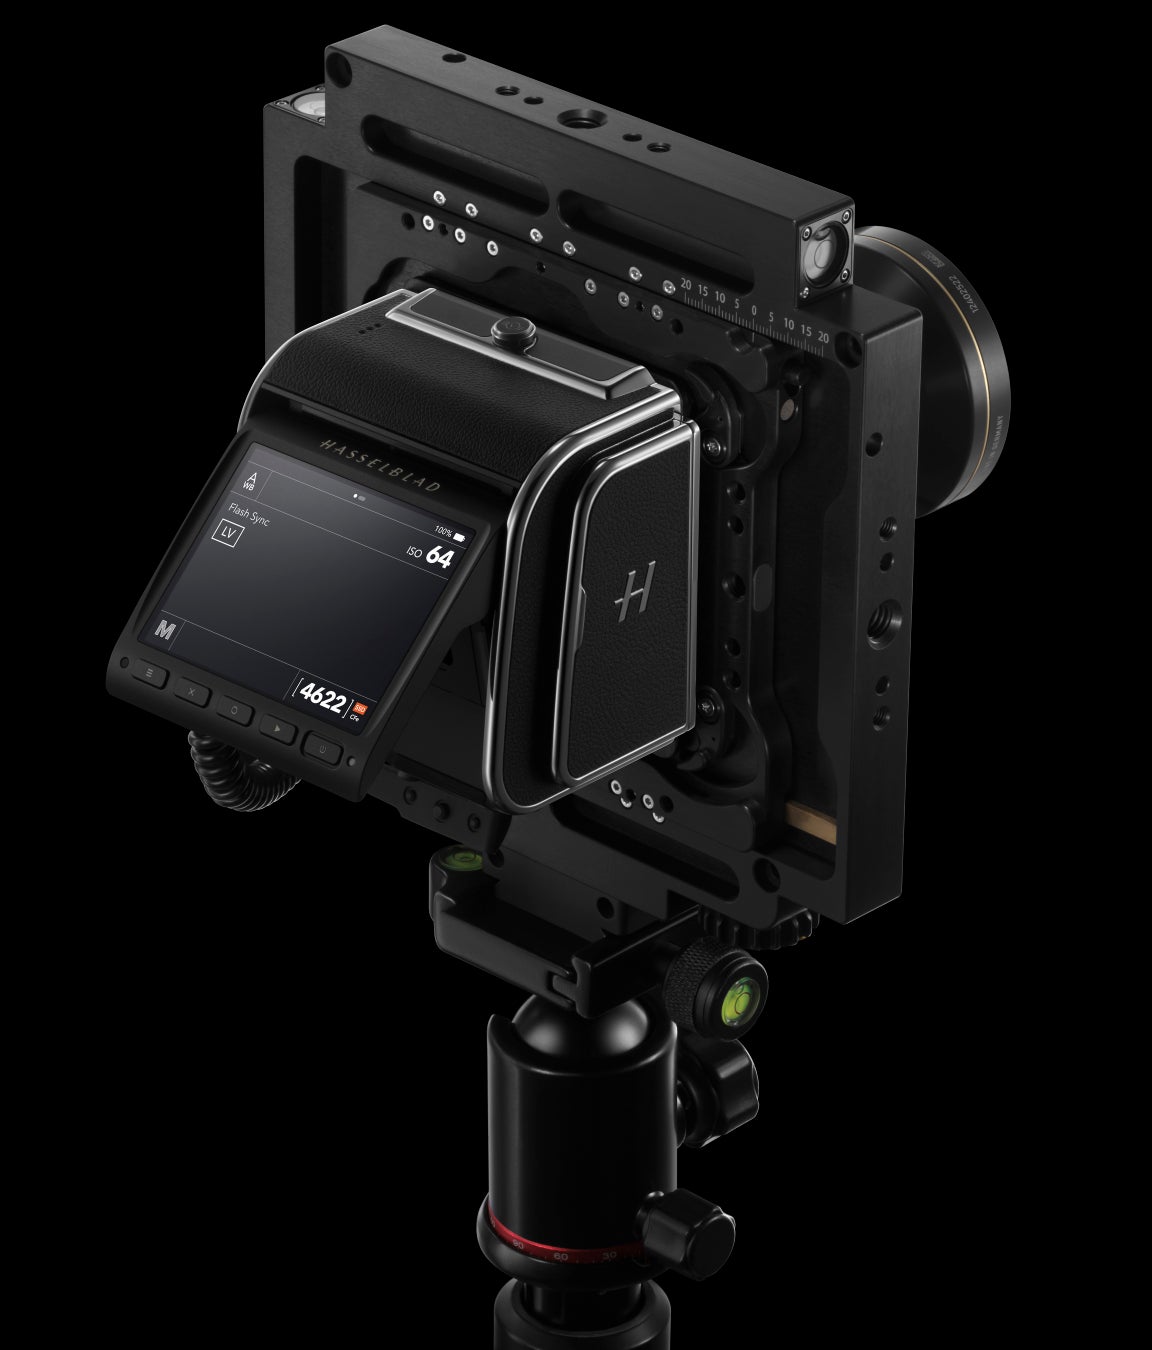 1台で3通りのカメラ構成に対応した1億画素中判カメラ HASSELBLAD 907X & CFV 100C を発売